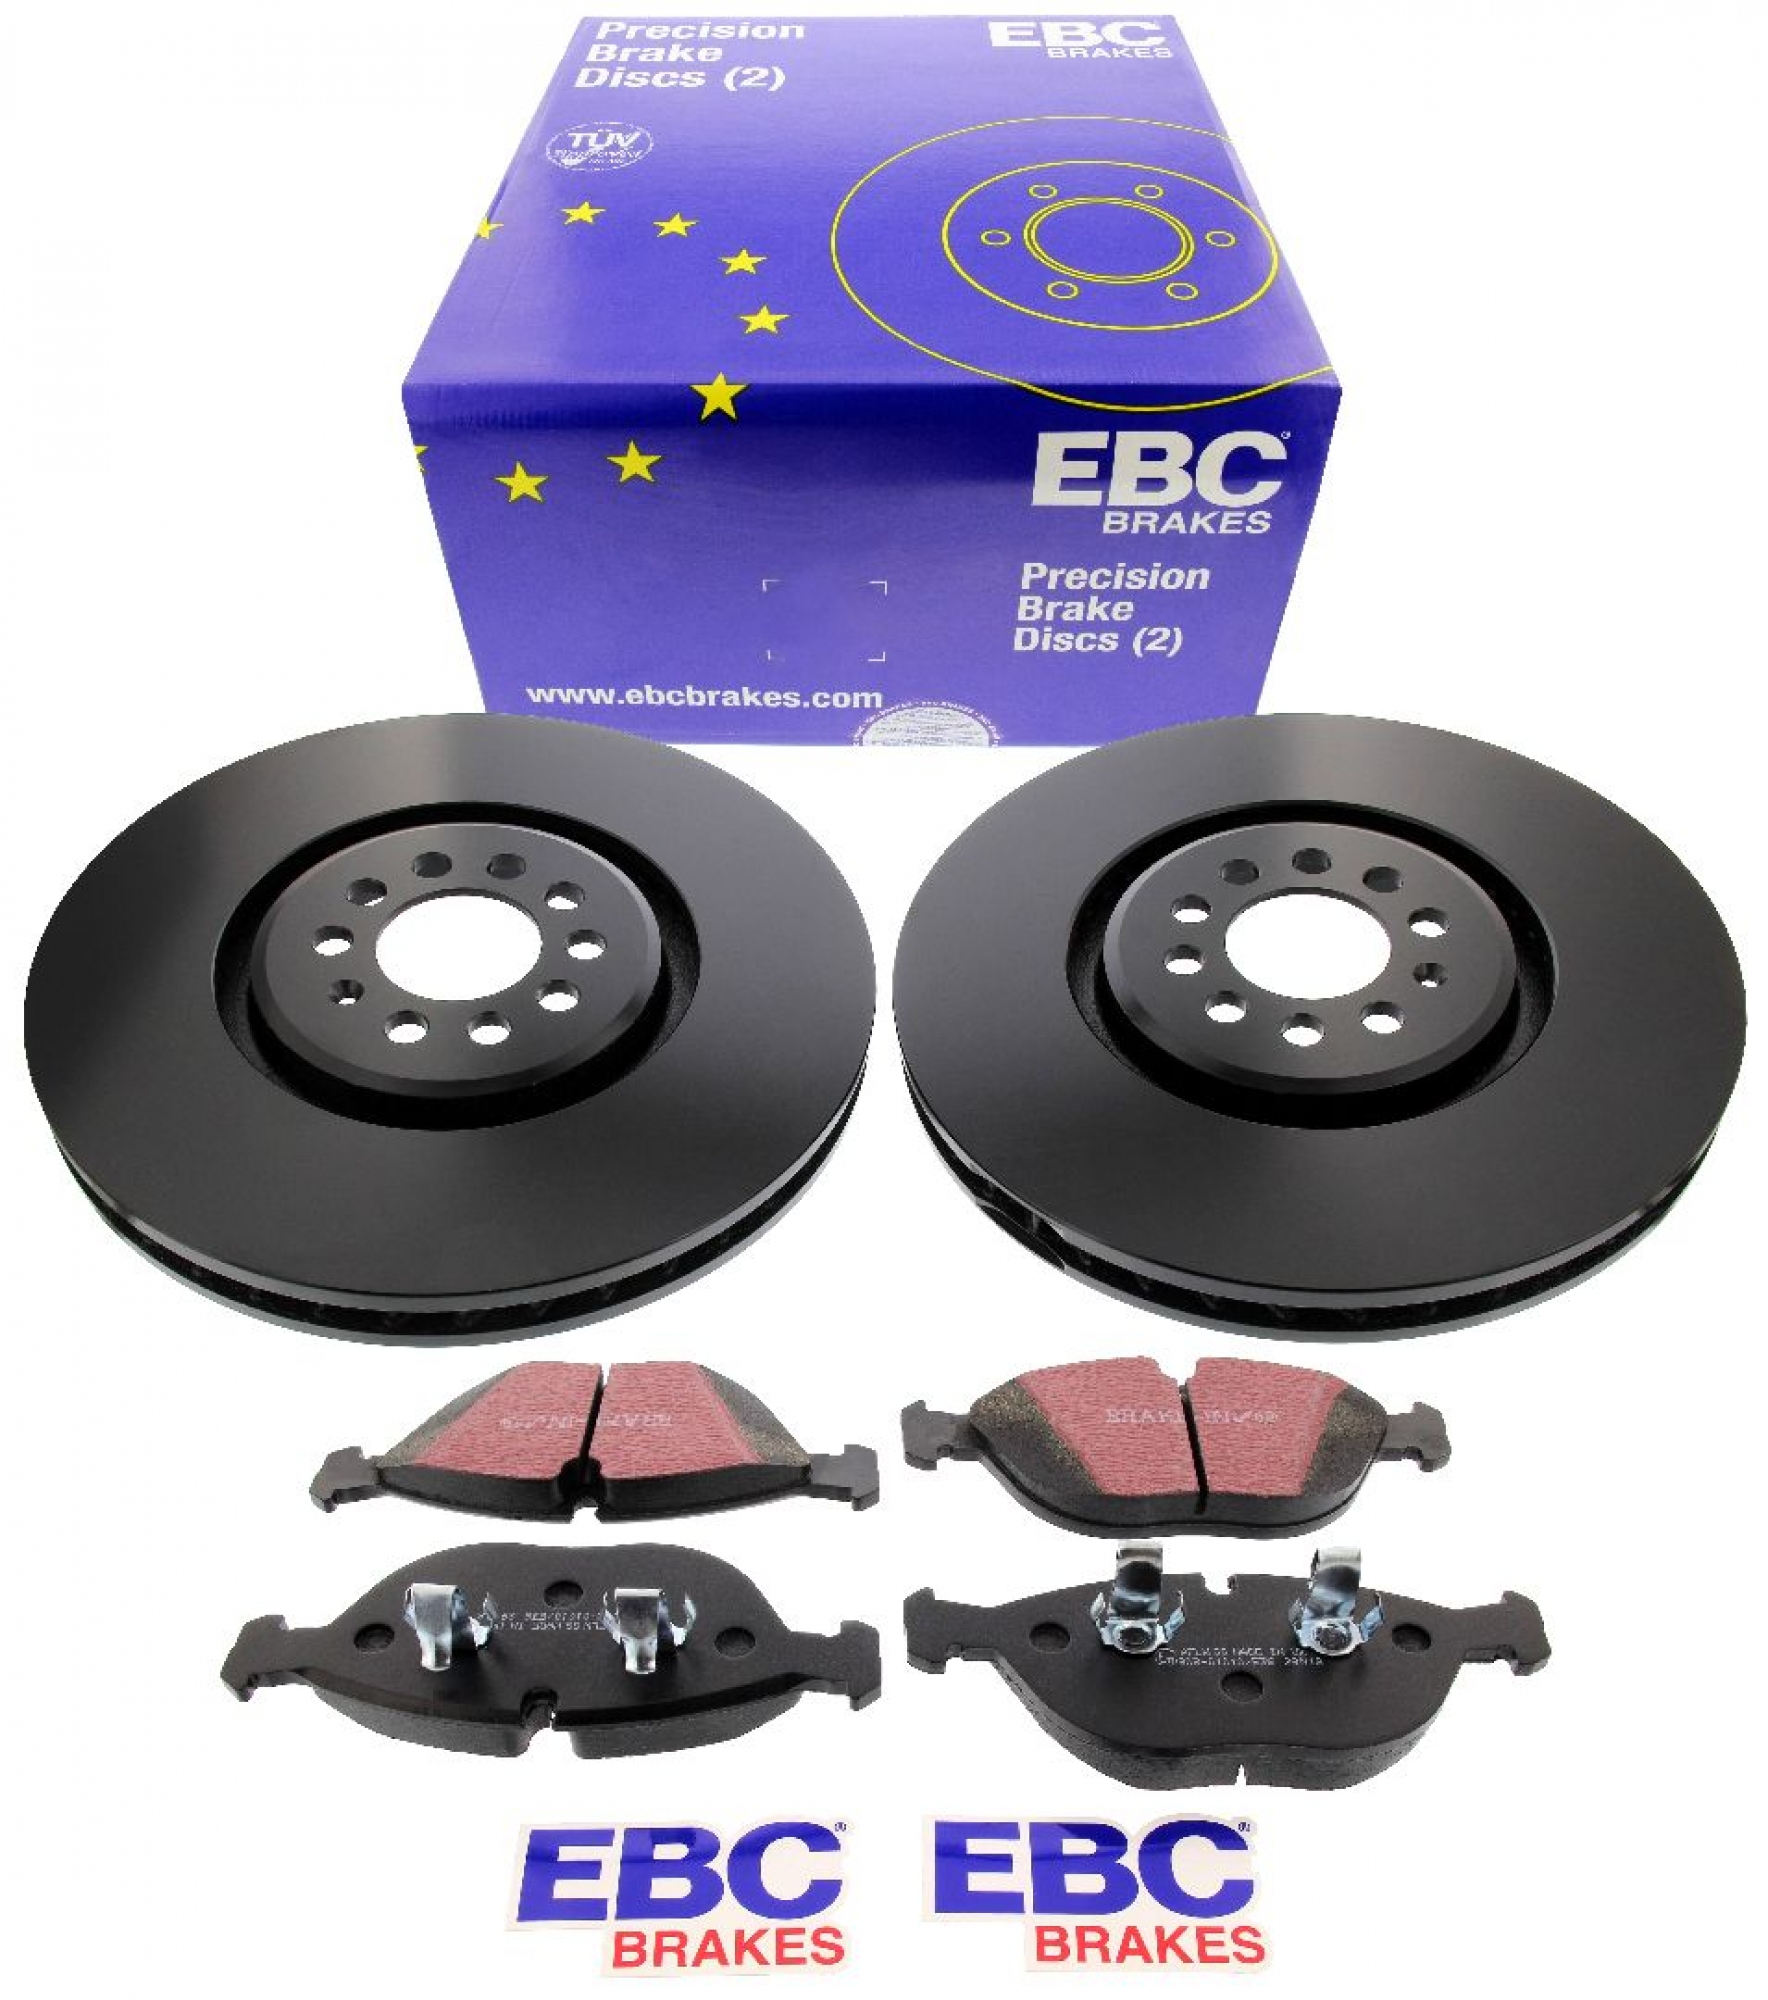 EBC-Bremsensatz, Premium Sportbremsscheiben (gelocht) + Bremsbeläge, Blackstuff, Achssatz, VA, VW Golf 4 R32, Ø 334 mm